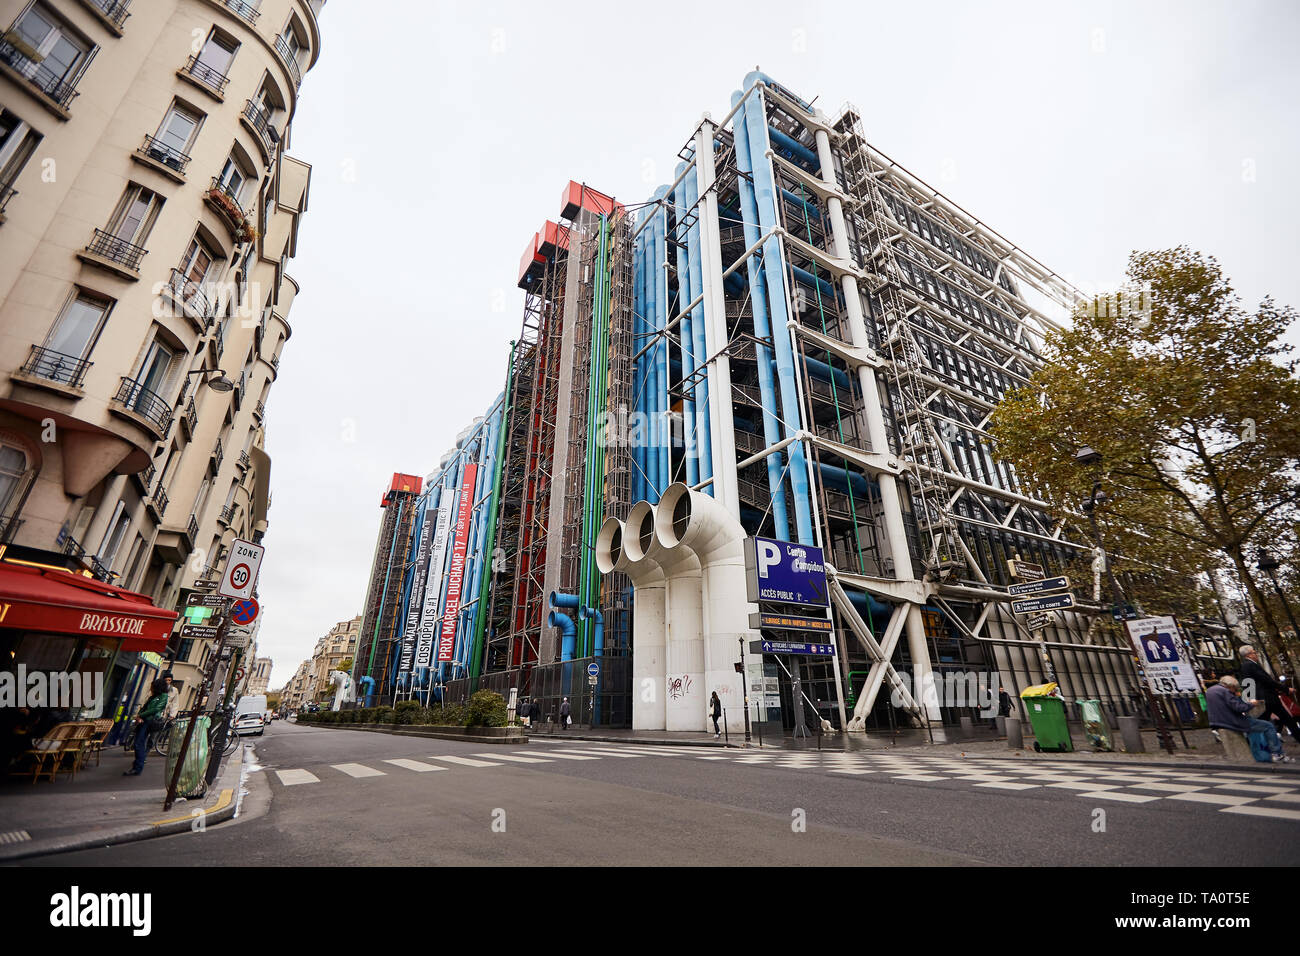 PARIS, FRANCE - 24 octobre 2017 : Centre Georges Pompidou 1977 a été conçu dans le style de l'architecture high-tech. Il abrite une bibliothèque, art moderne national Banque D'Images